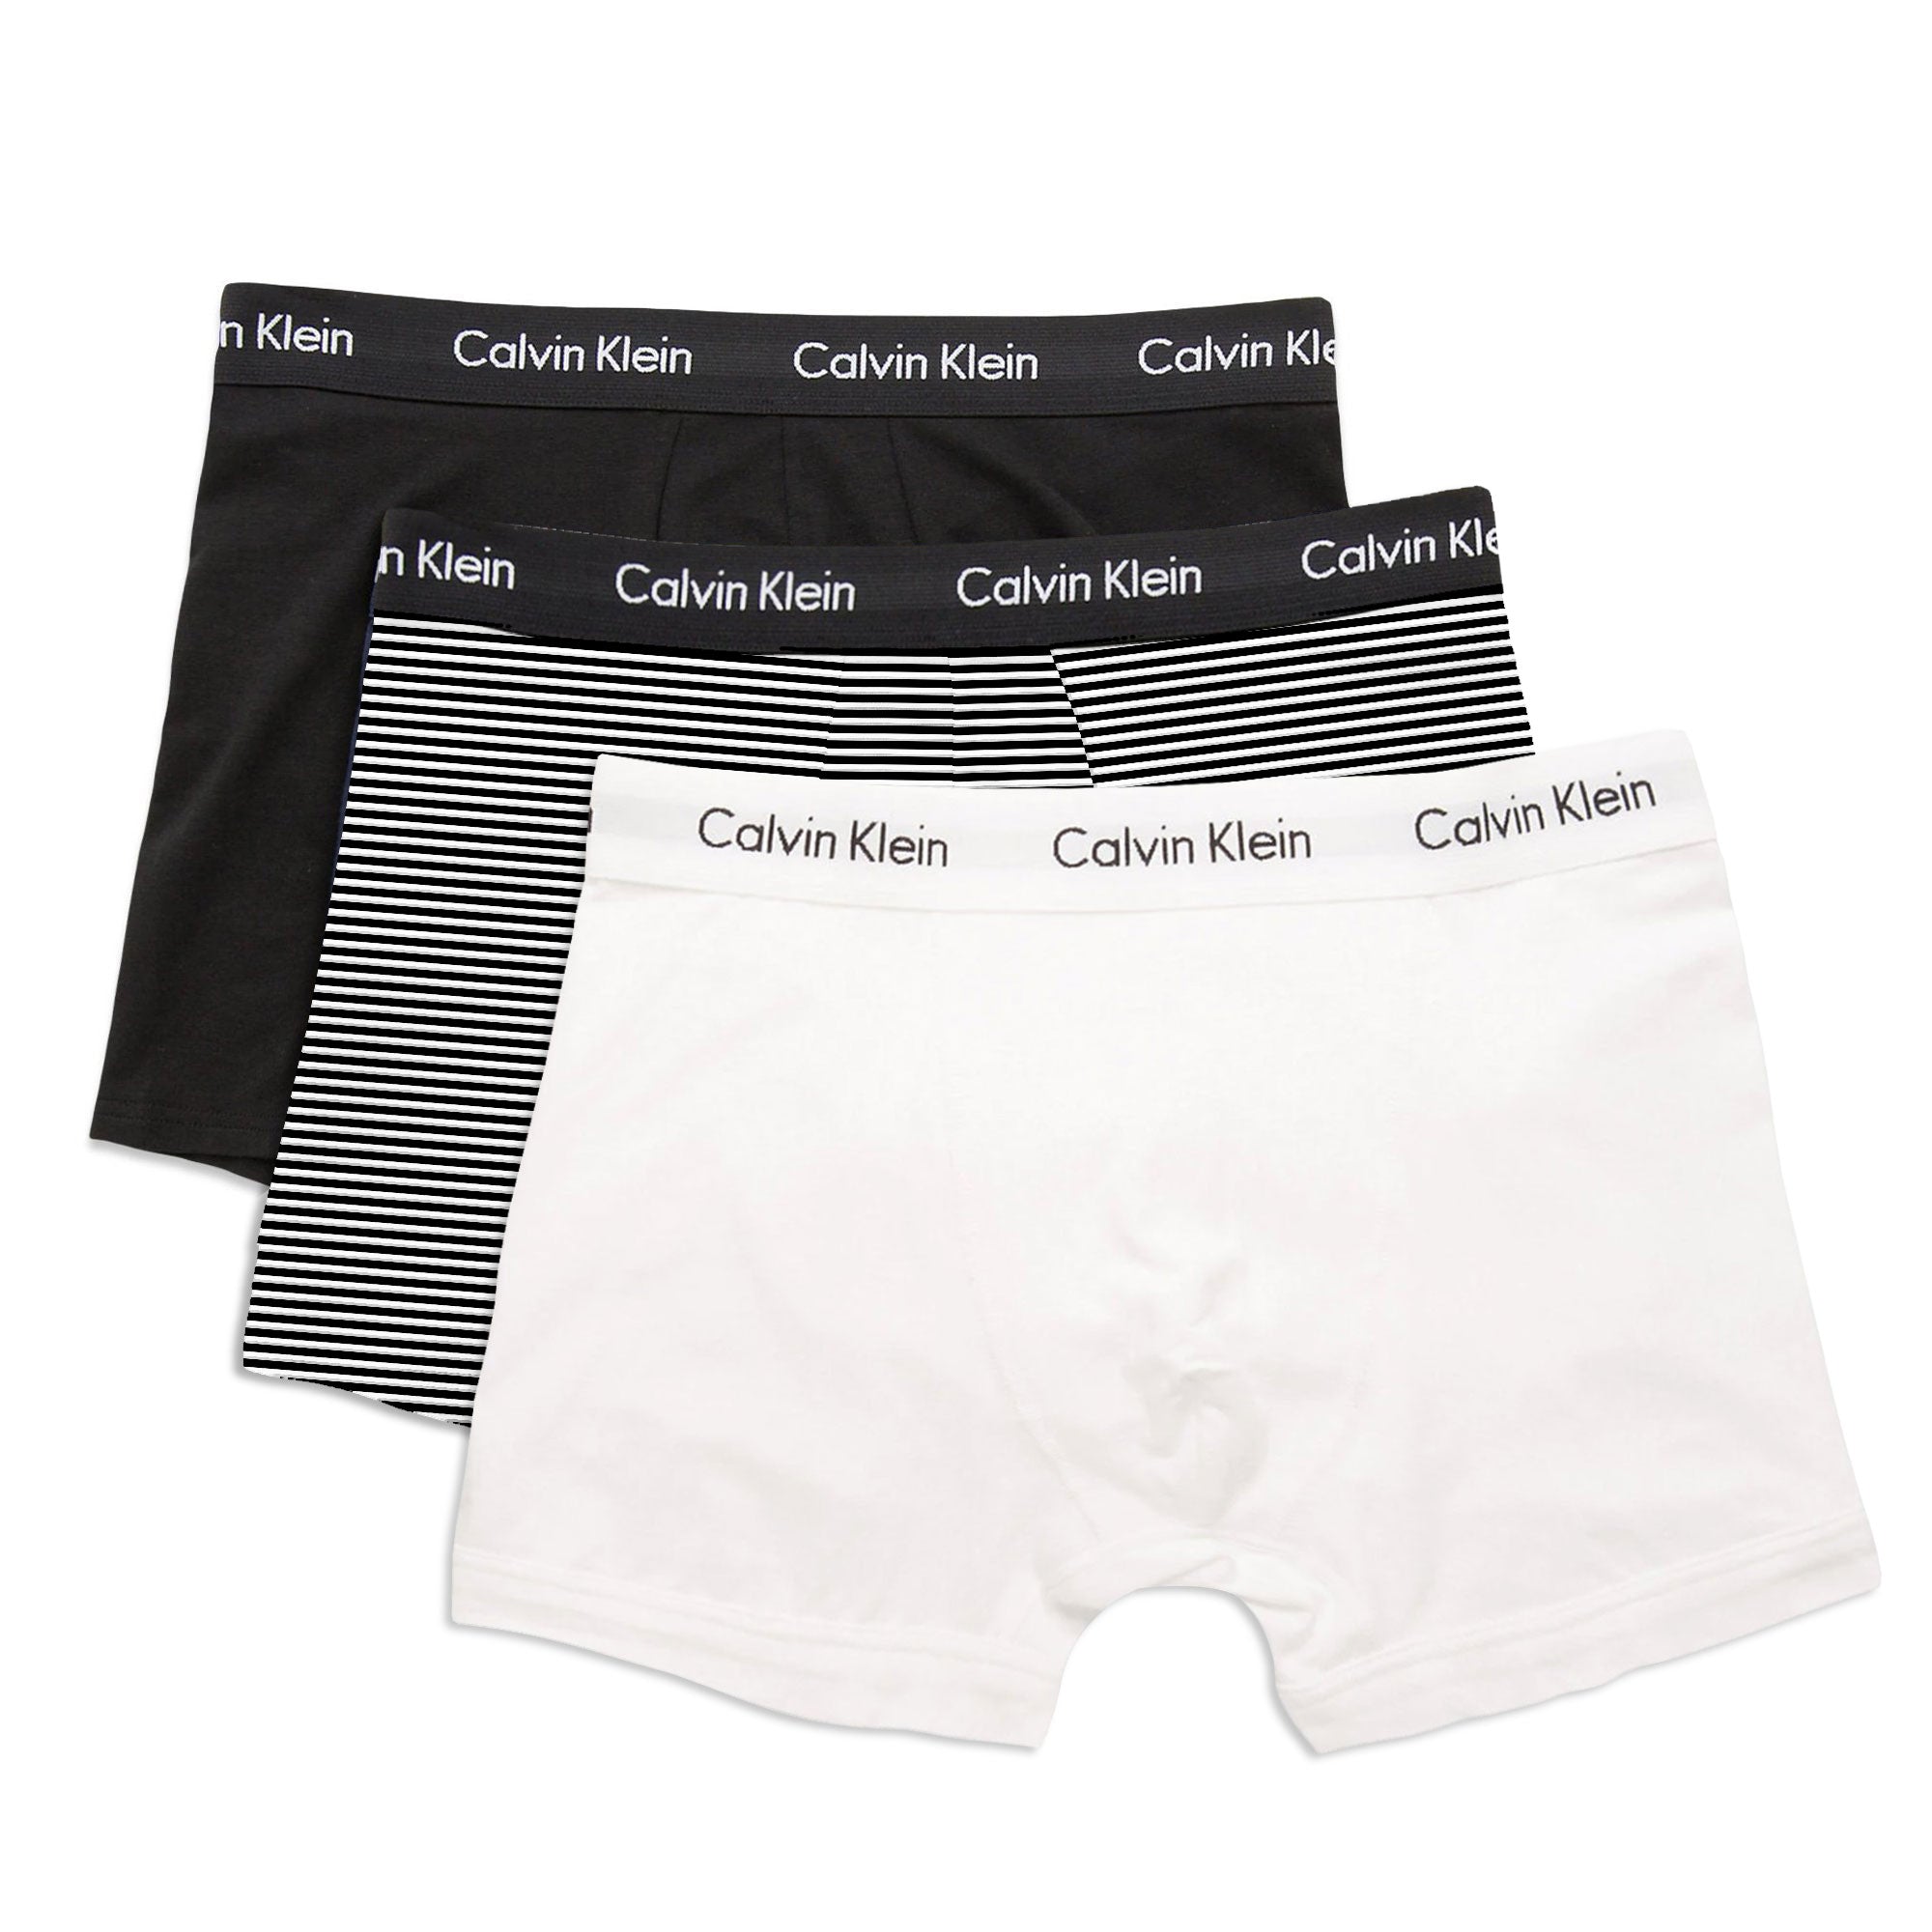 Calvin Klein Cotton Stretch Trunks - Black/White/Stripe